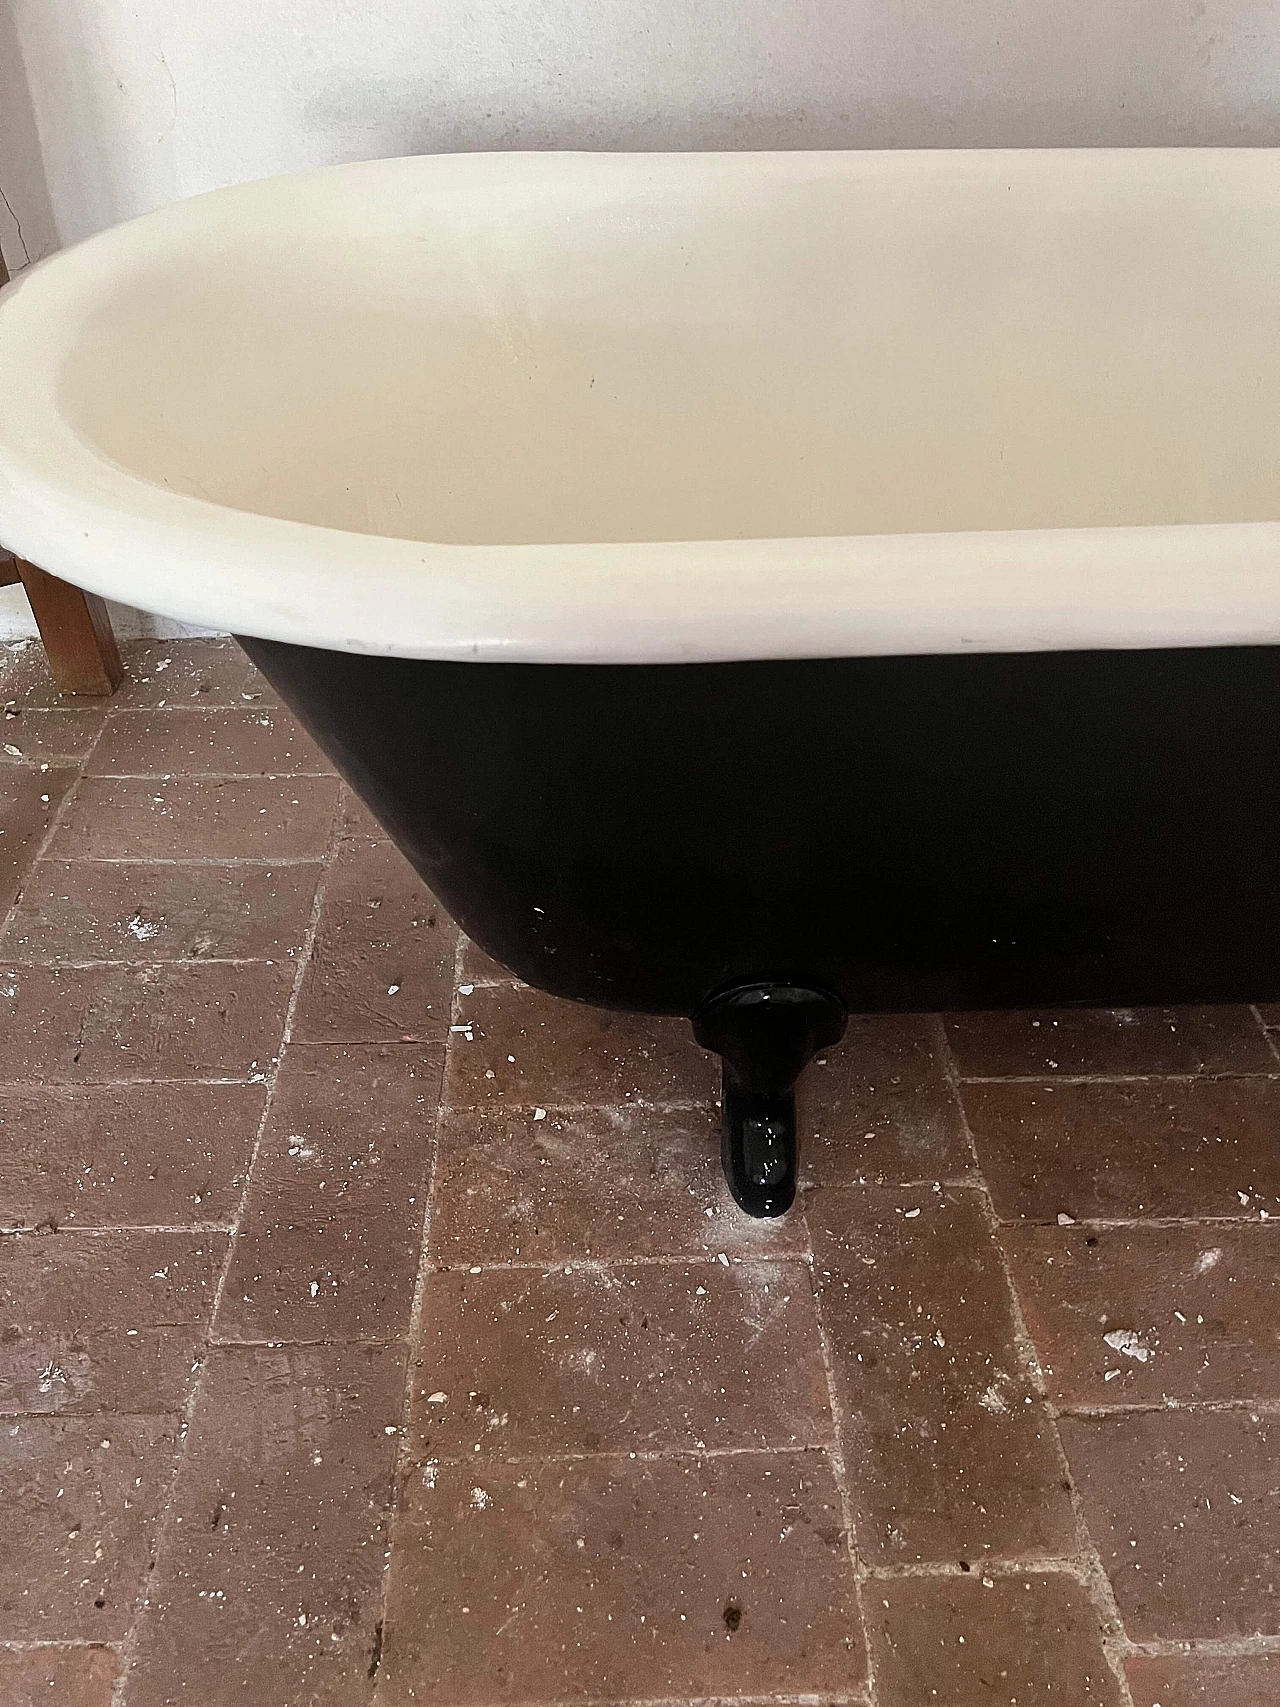 Enamelled cast iron bathtub, early twentieth century 1075235